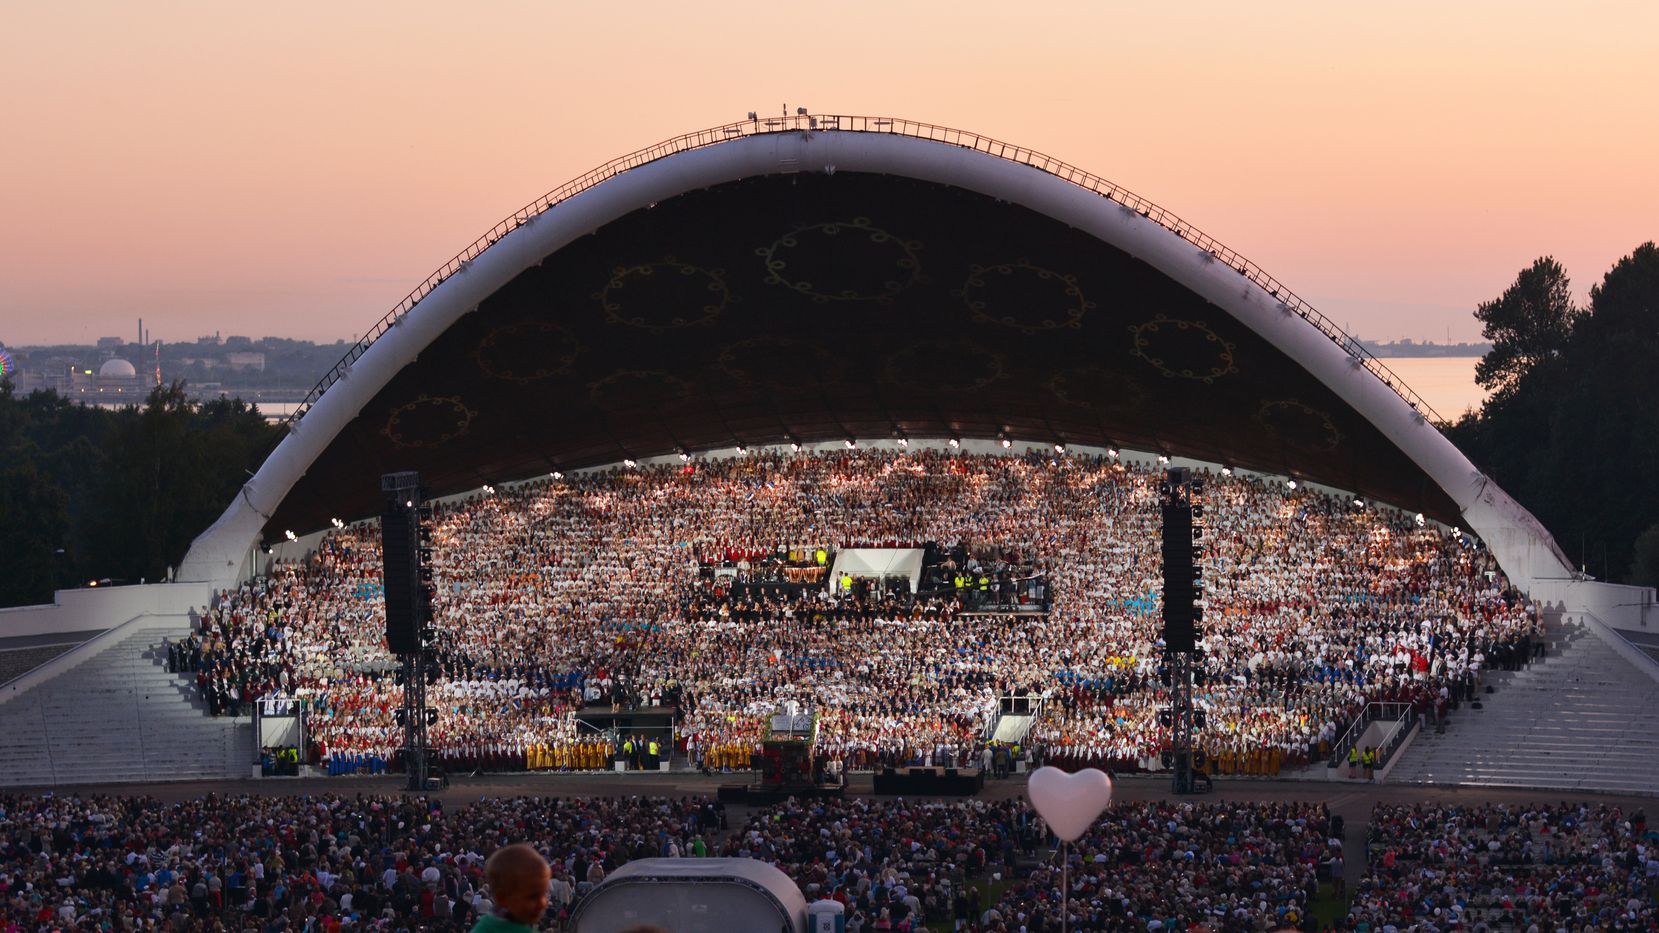 Unter der muschelförmigen Kuppel der Bühne versammeln sich 28000 Sängerinnen und Sänger. (c) A. Palu/wikimedia commons